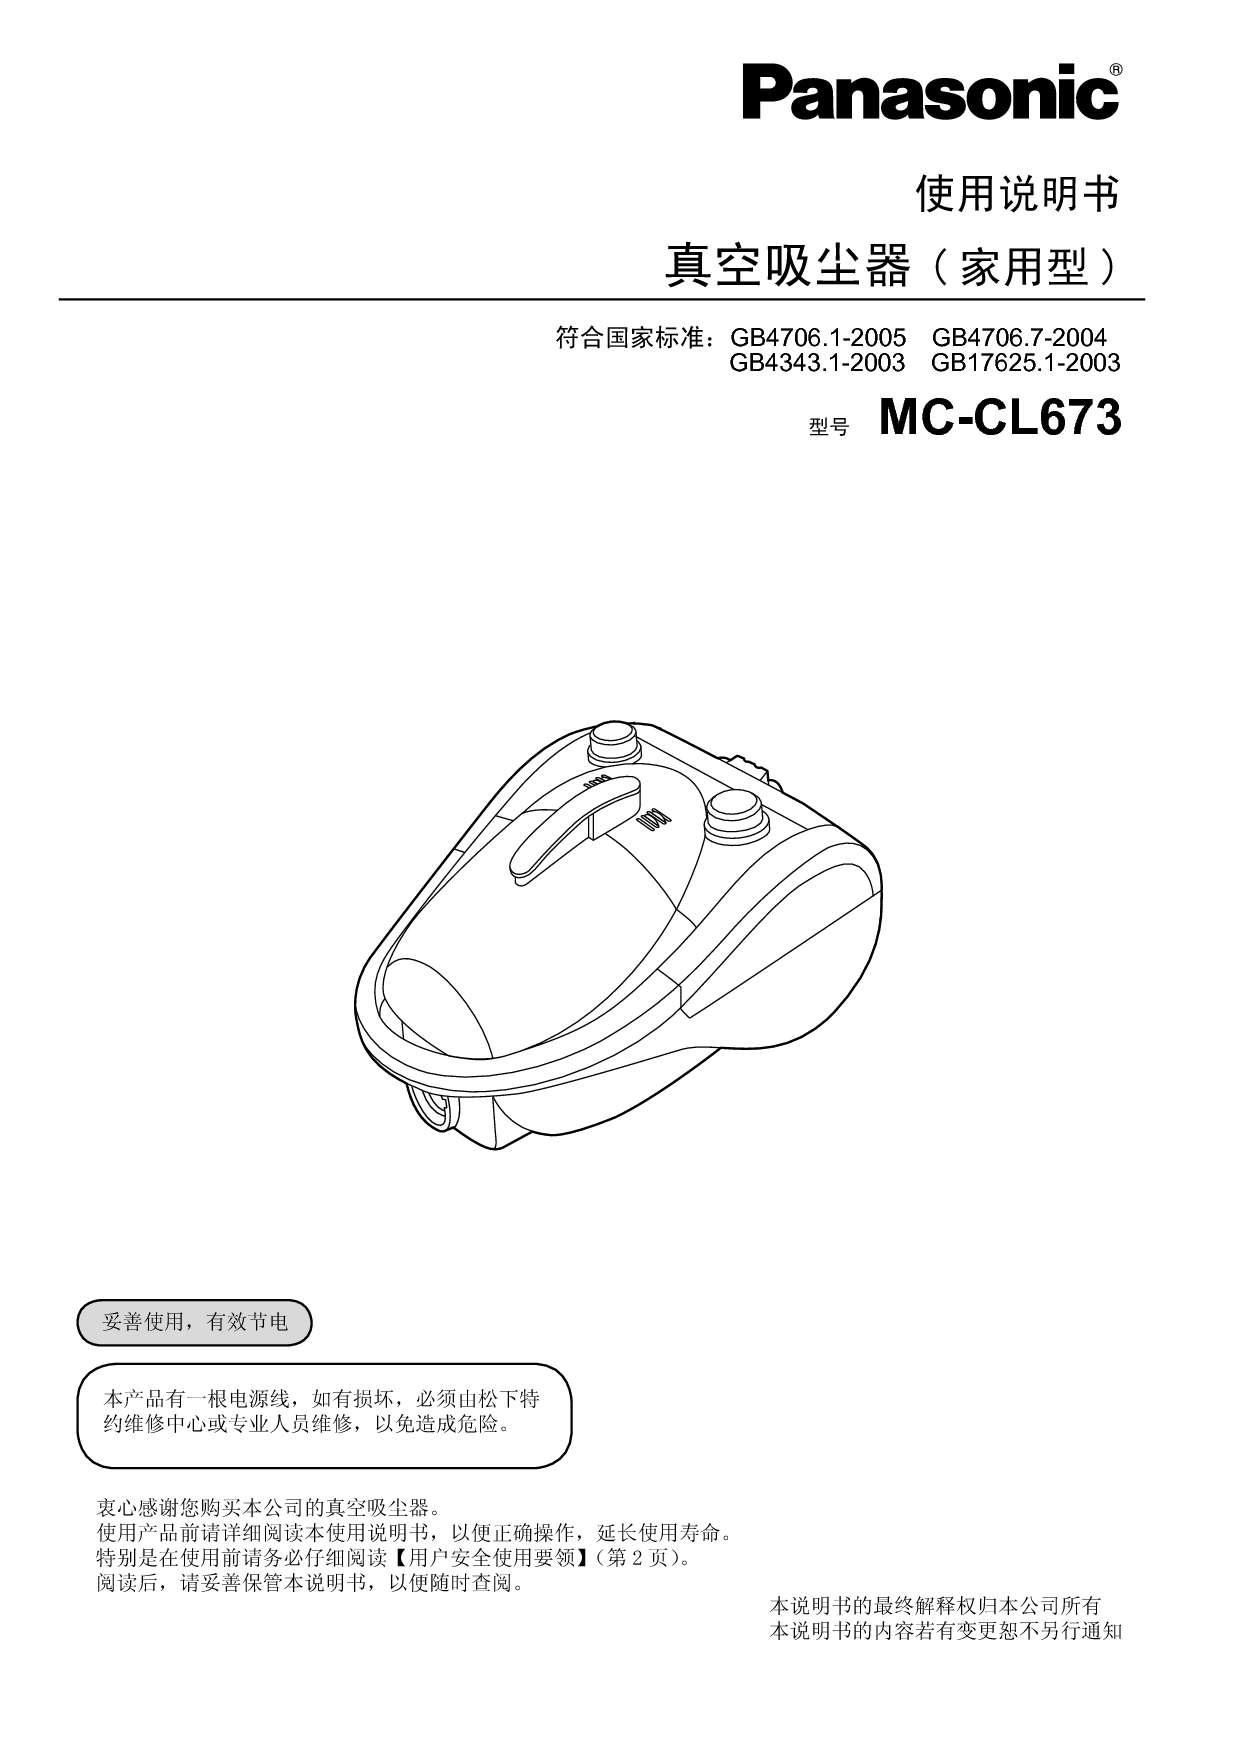 松下 Panasonic MC-CL673 说明书 封面